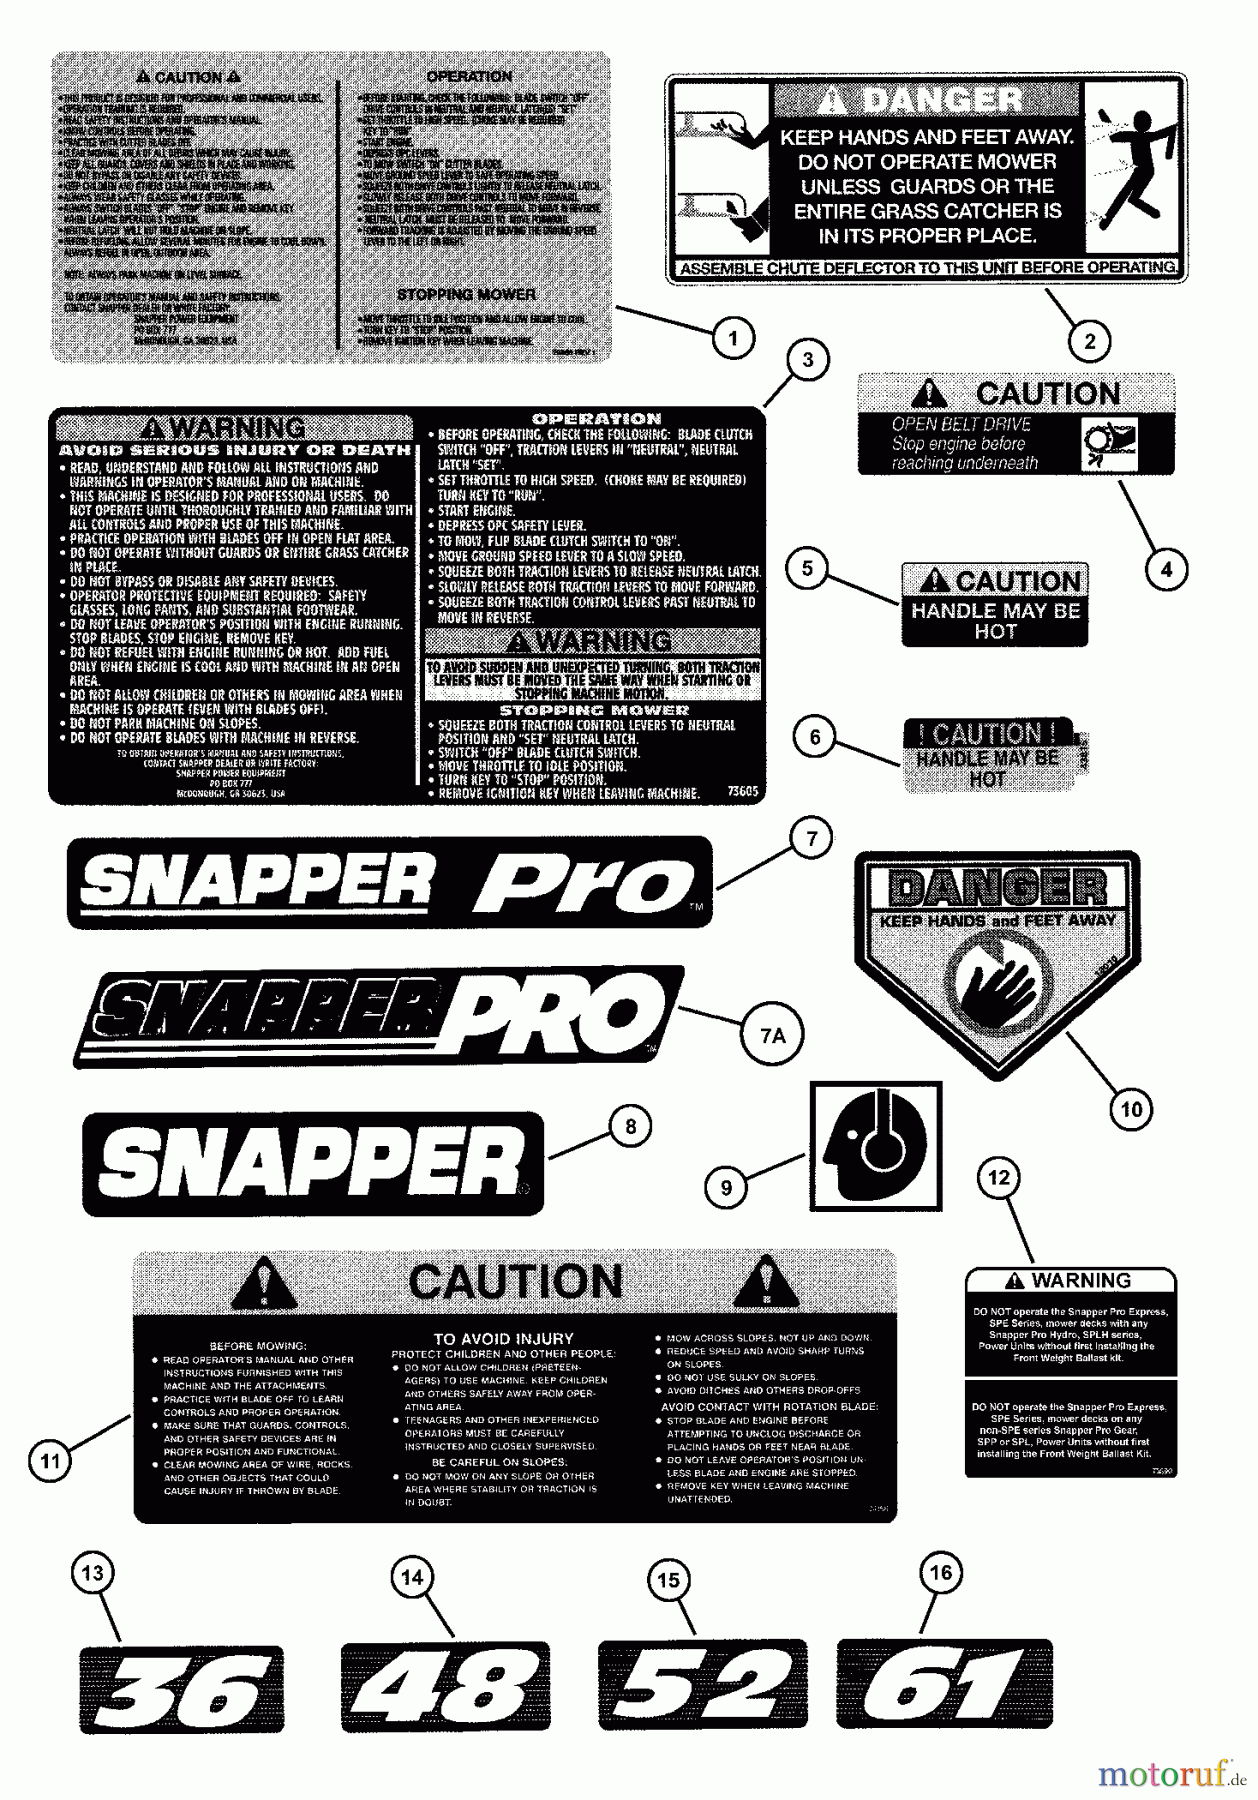  Snapper Mähdecks SP520 - Snapper 52